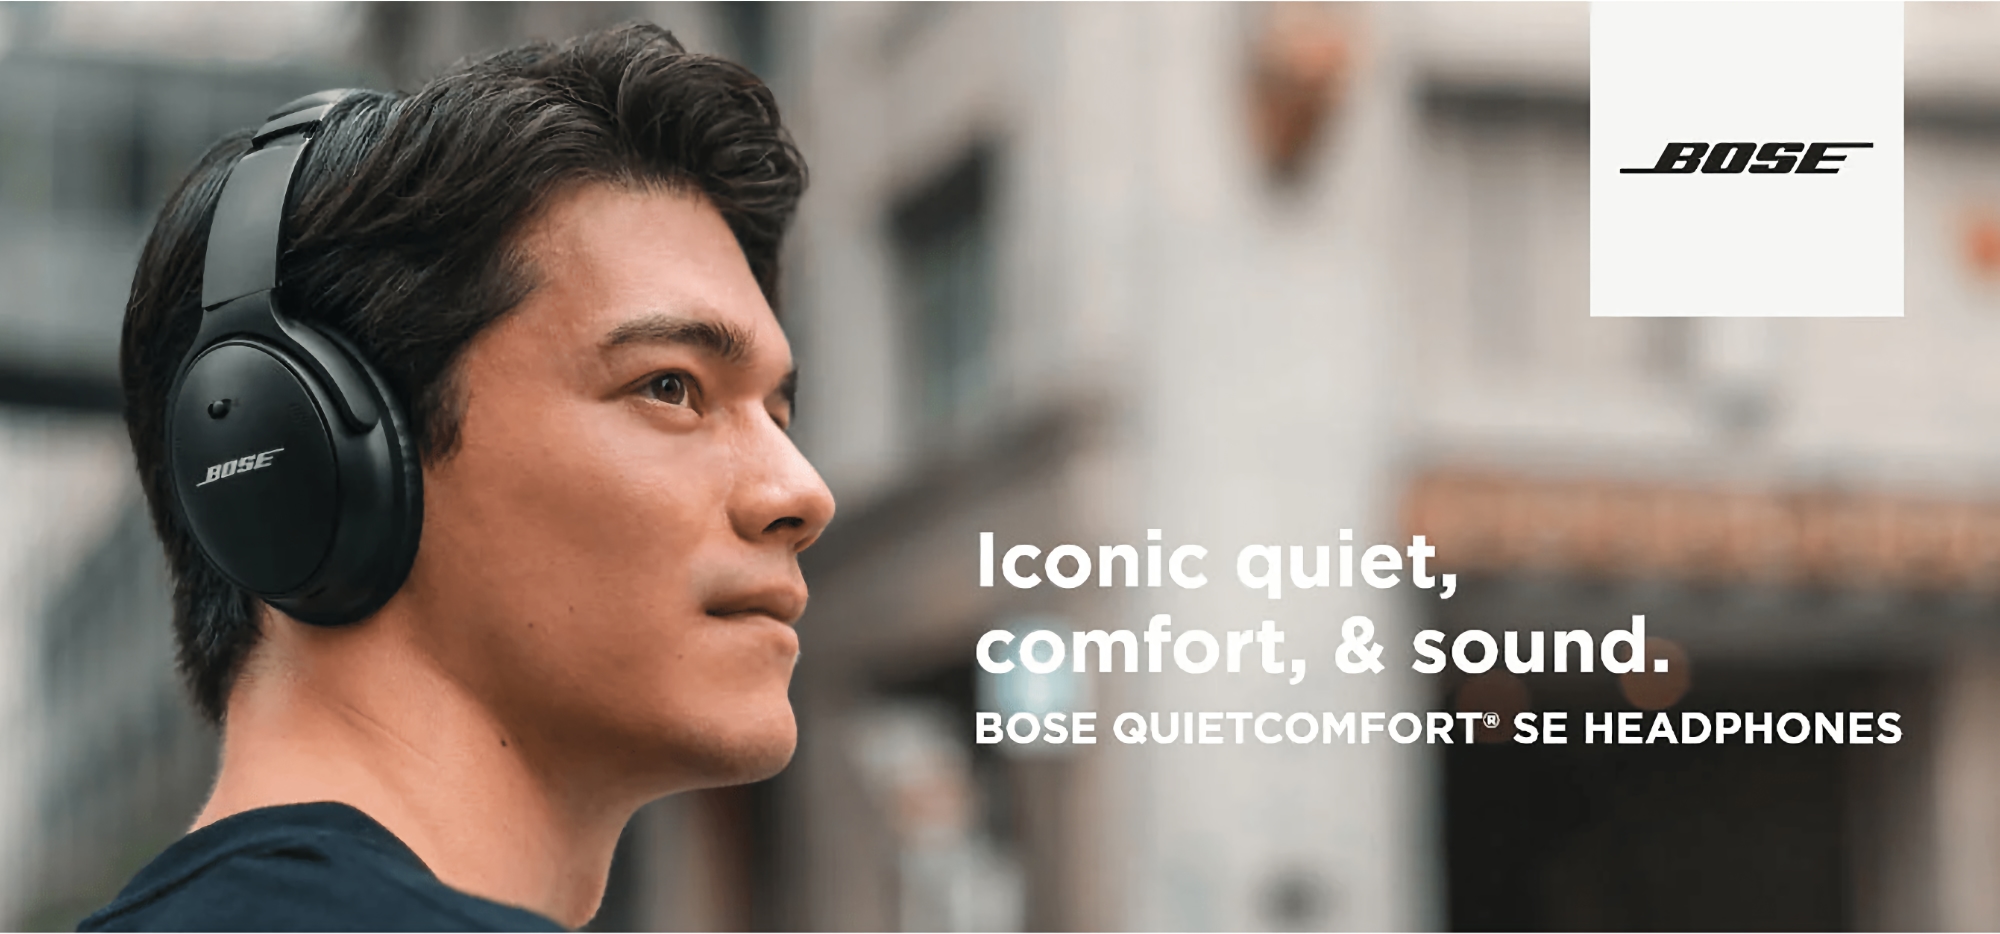 Bose QuietComfort SE en Amazon: auriculares con ANC y hasta 24 horas de autonomía con un descuento de 101 euros